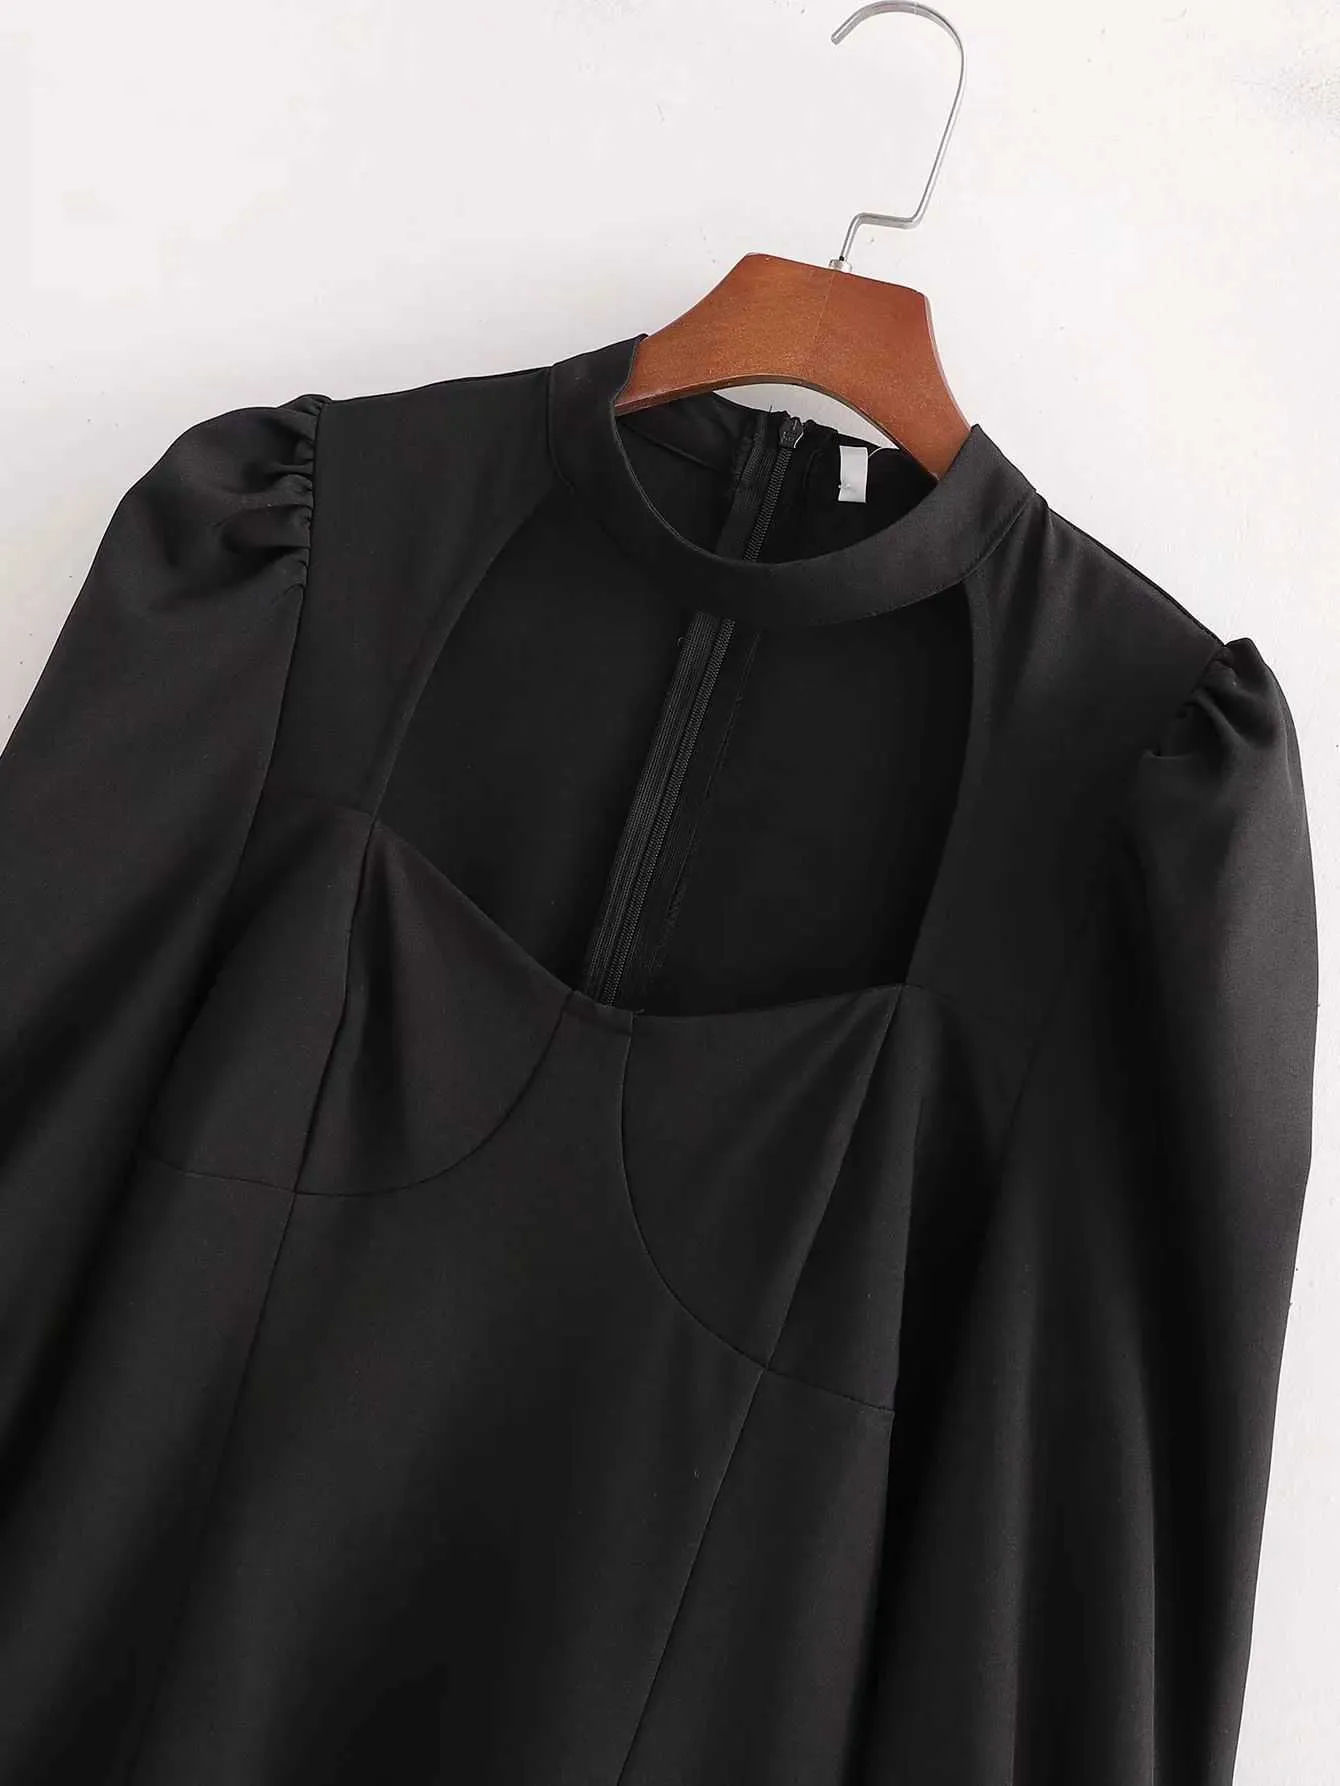 Kadınlar Siyah Elbise Hollow Göğüs Uzun Puf Kollu Slim-Fit Kısa Elbise Zarif Lady Chic Woman Elbiseler 210709